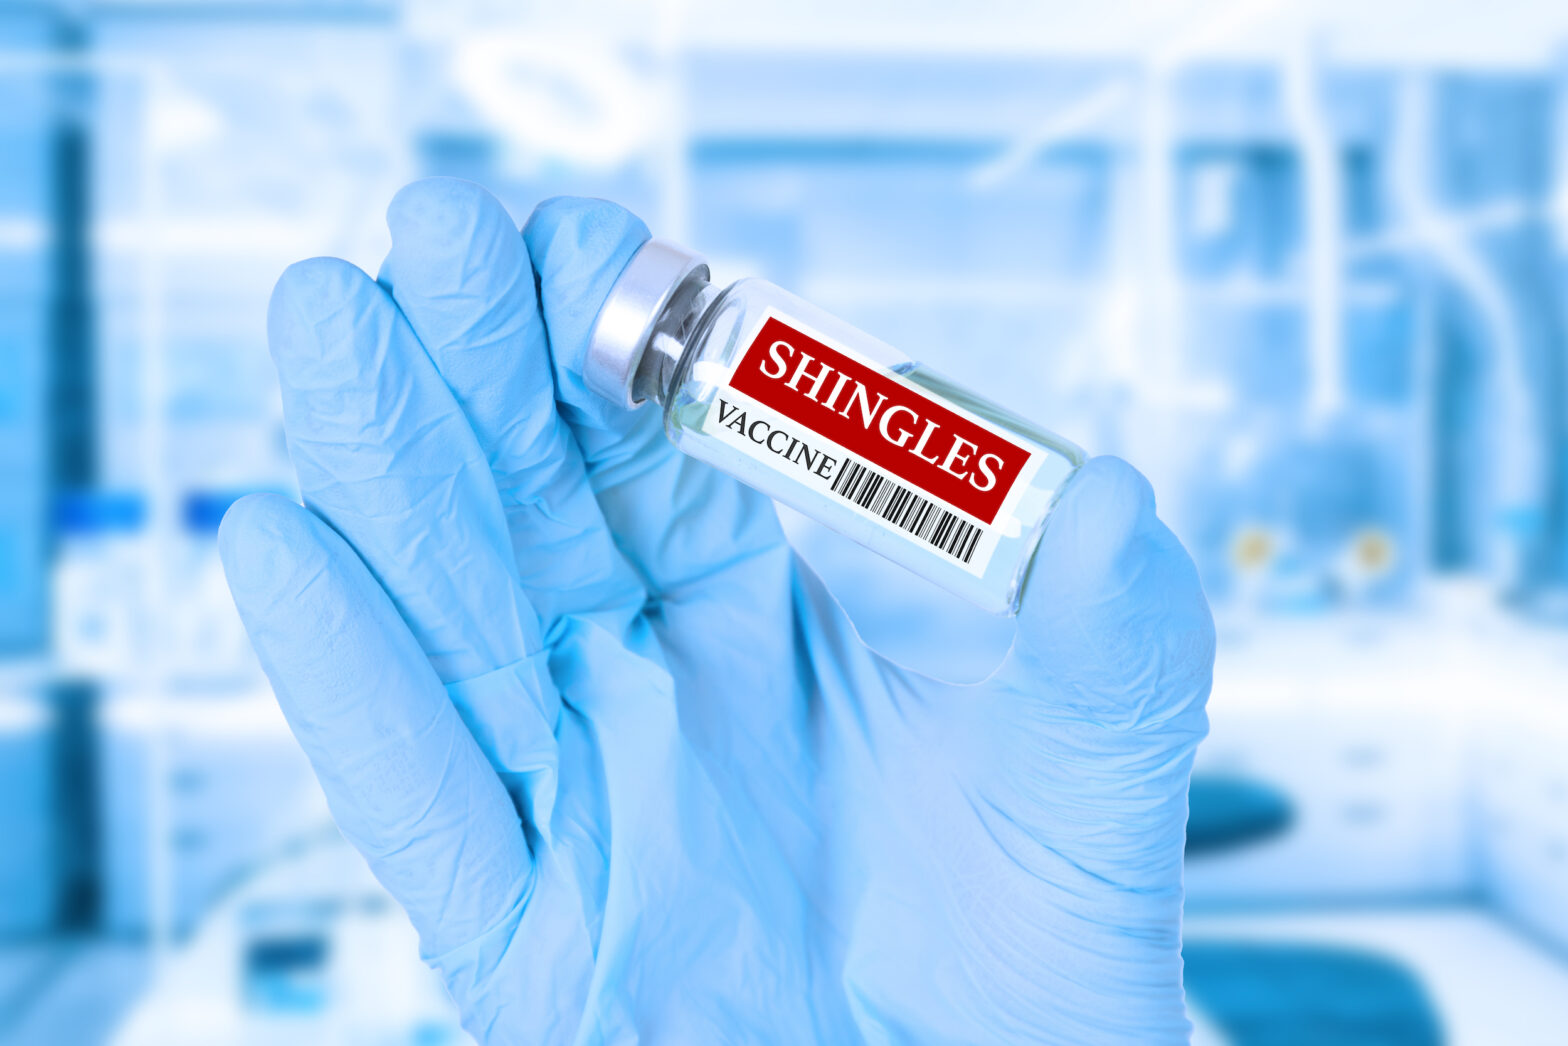 Sheridan Medical Center - Shingle vaccine